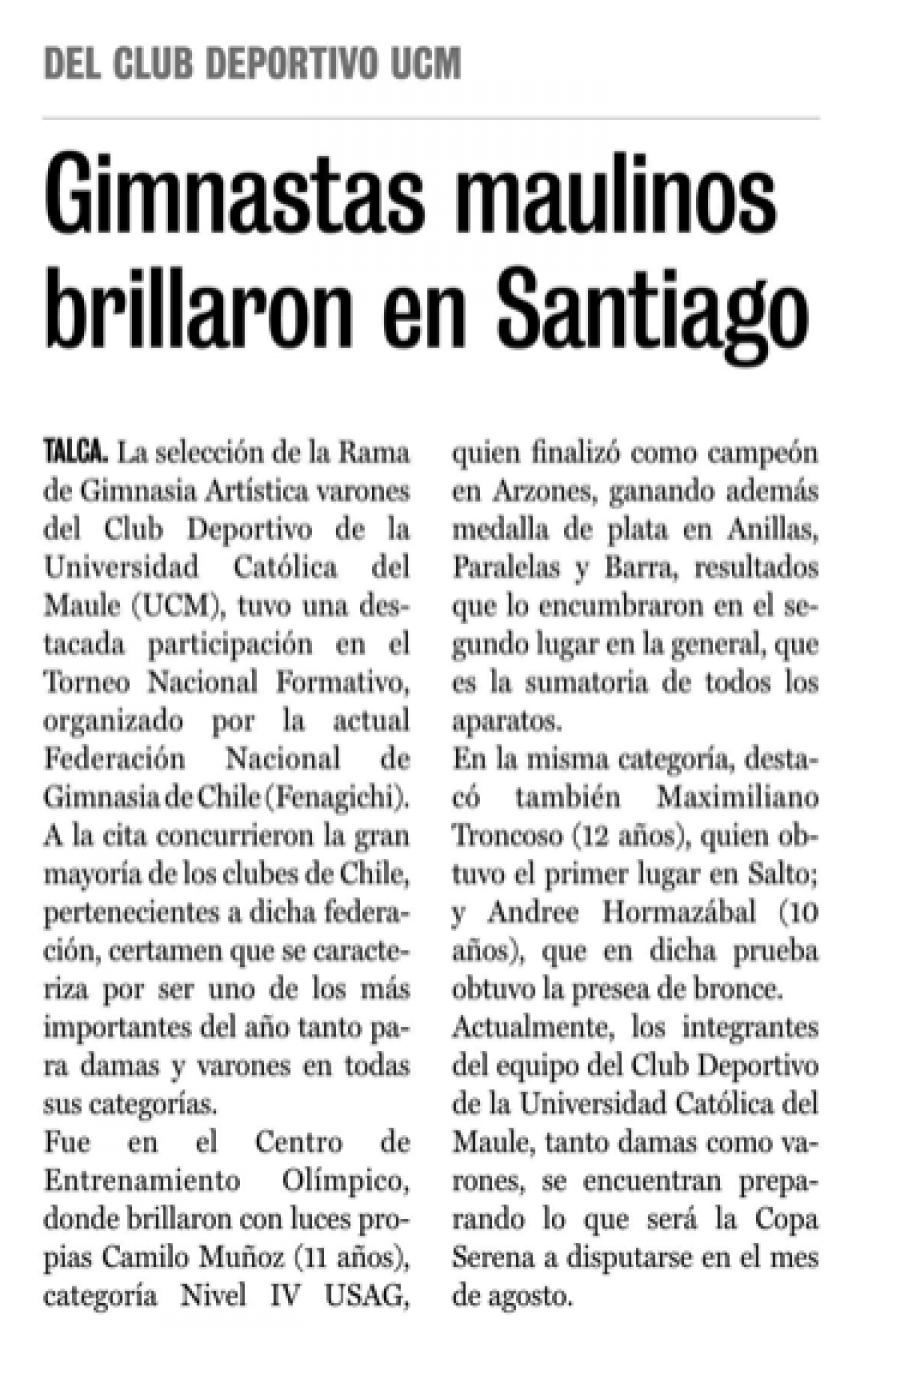 02 de julio en Diario La Prensa: “Gimnastas maulinos brillaron en Santiago”